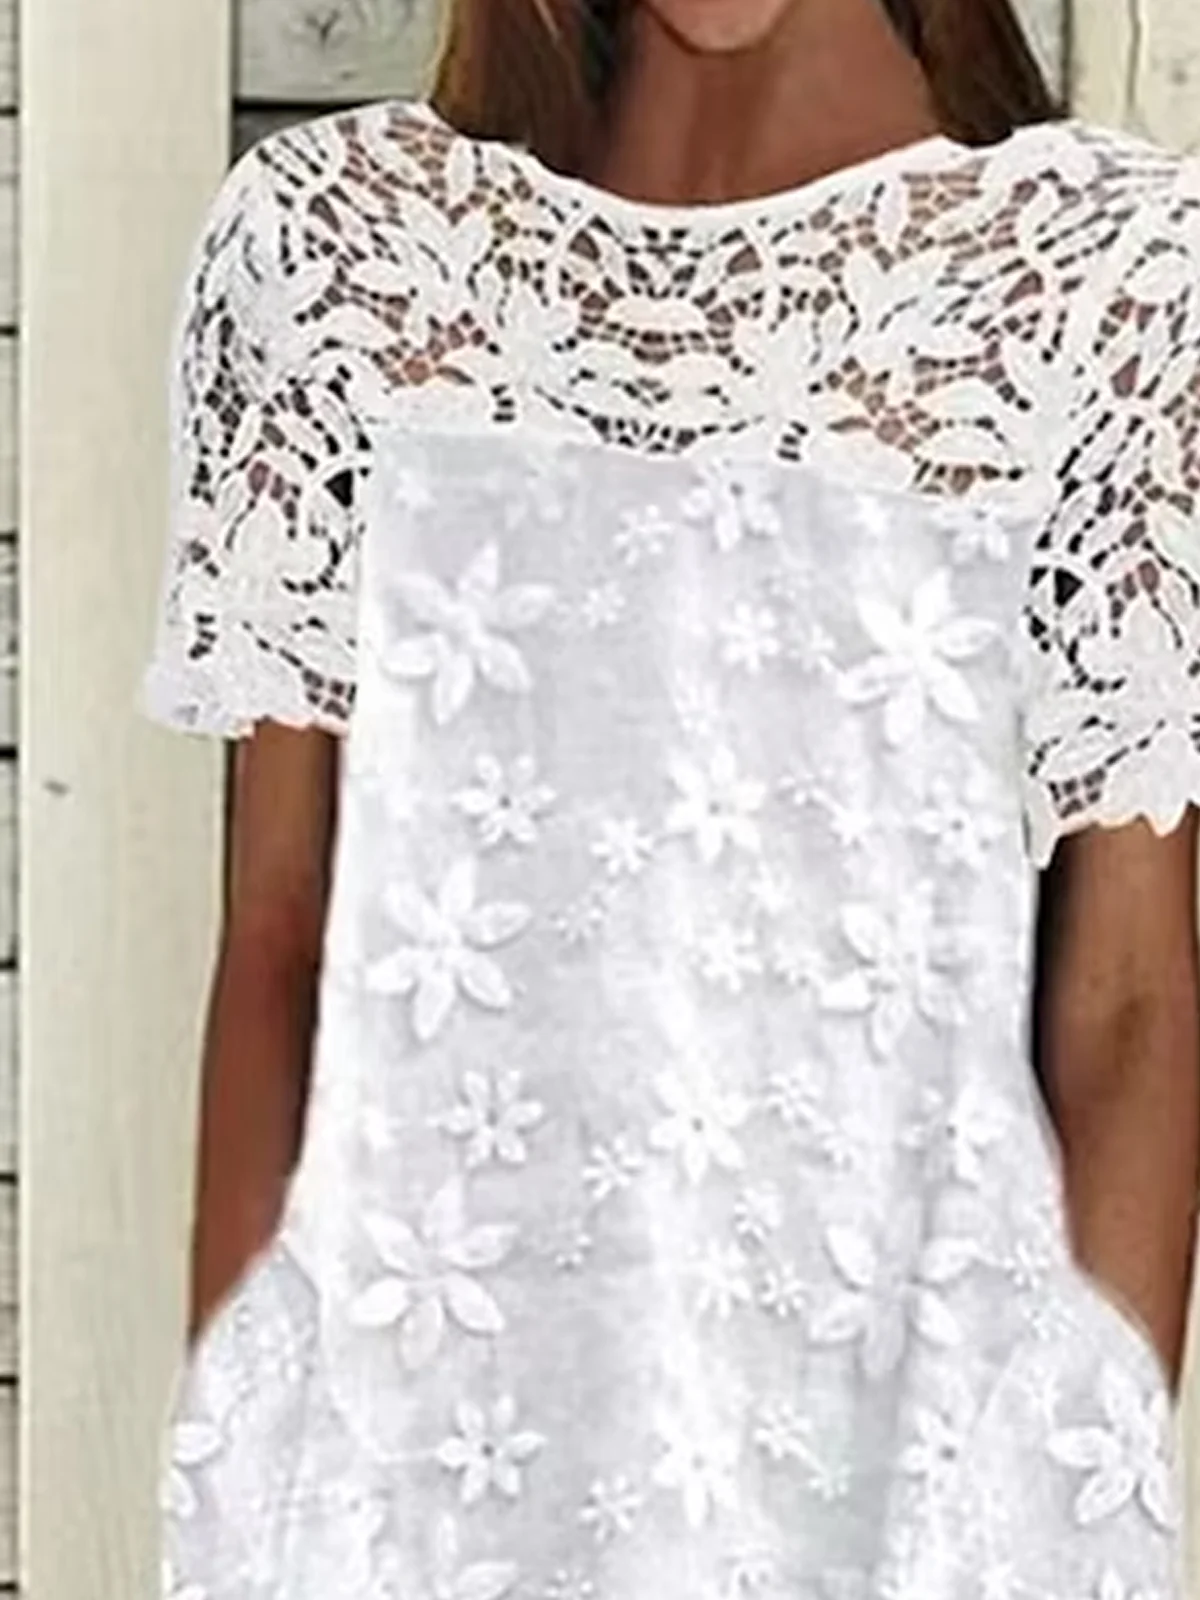 Cotton-Blend Linen Floral Dress